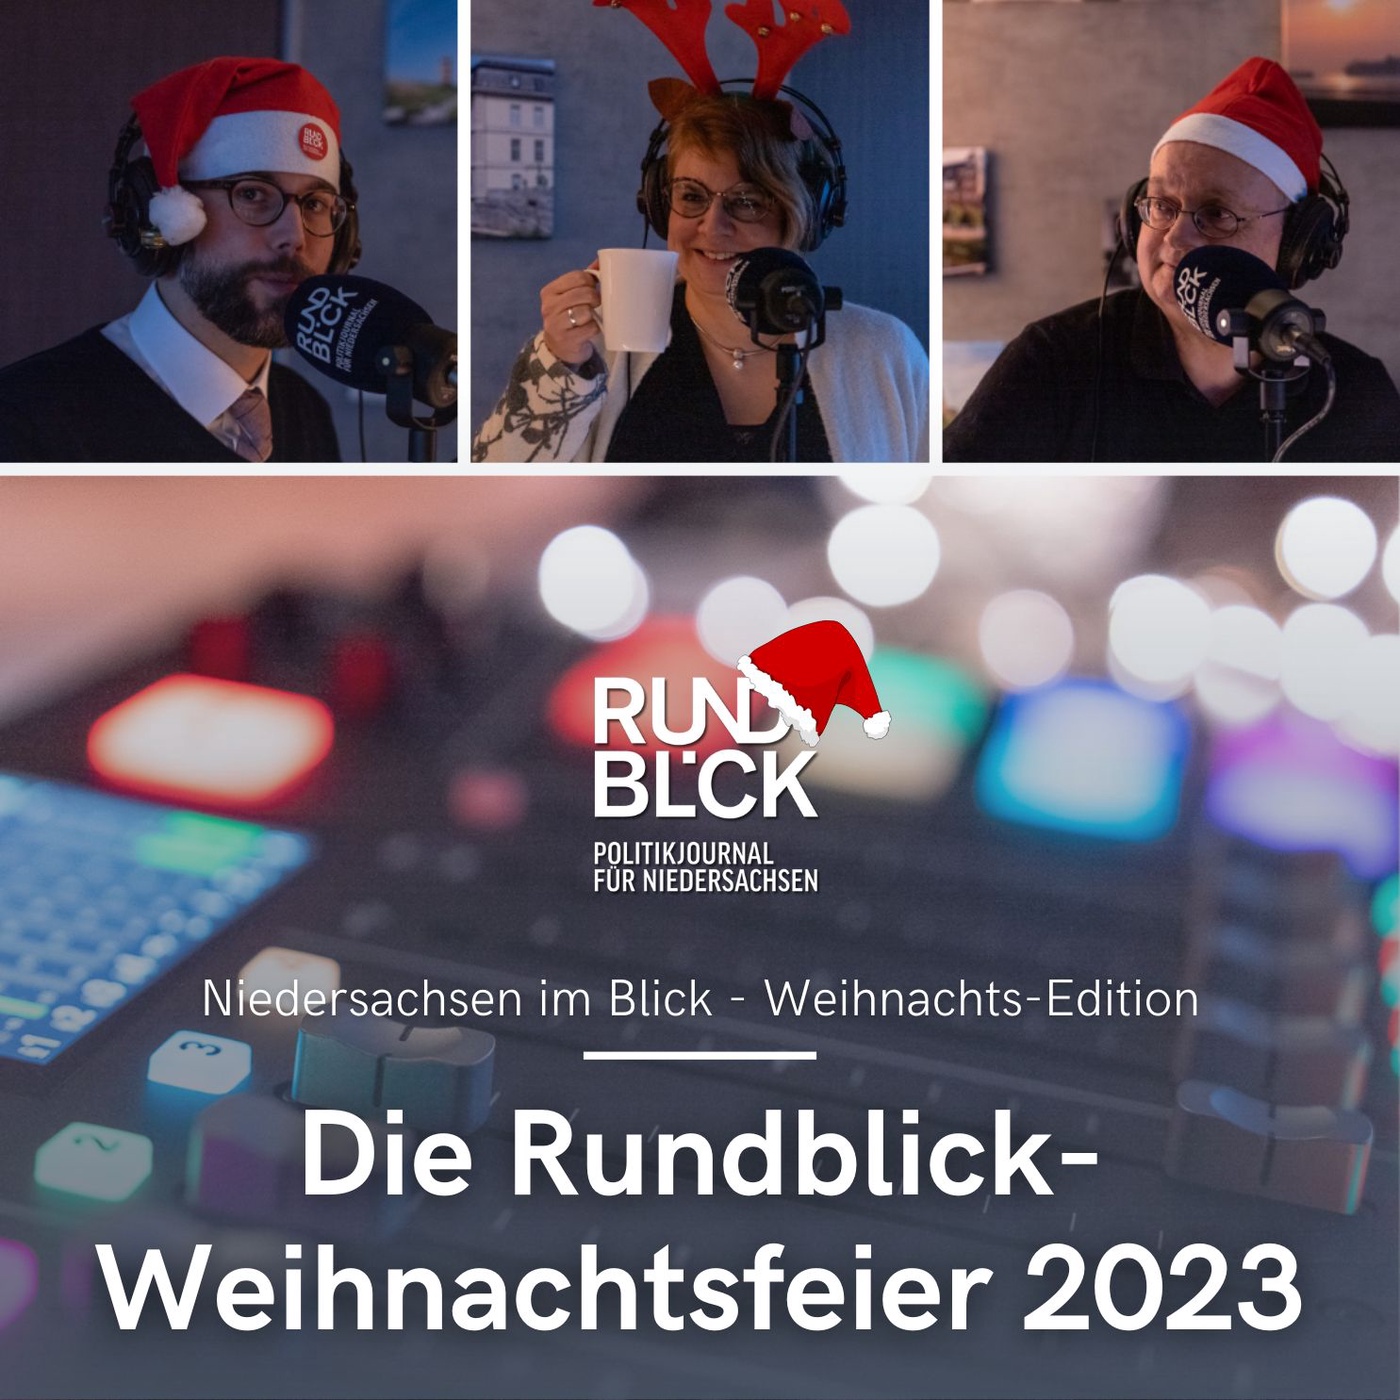 Die Rundblick-Weihnachtsfeier 2023